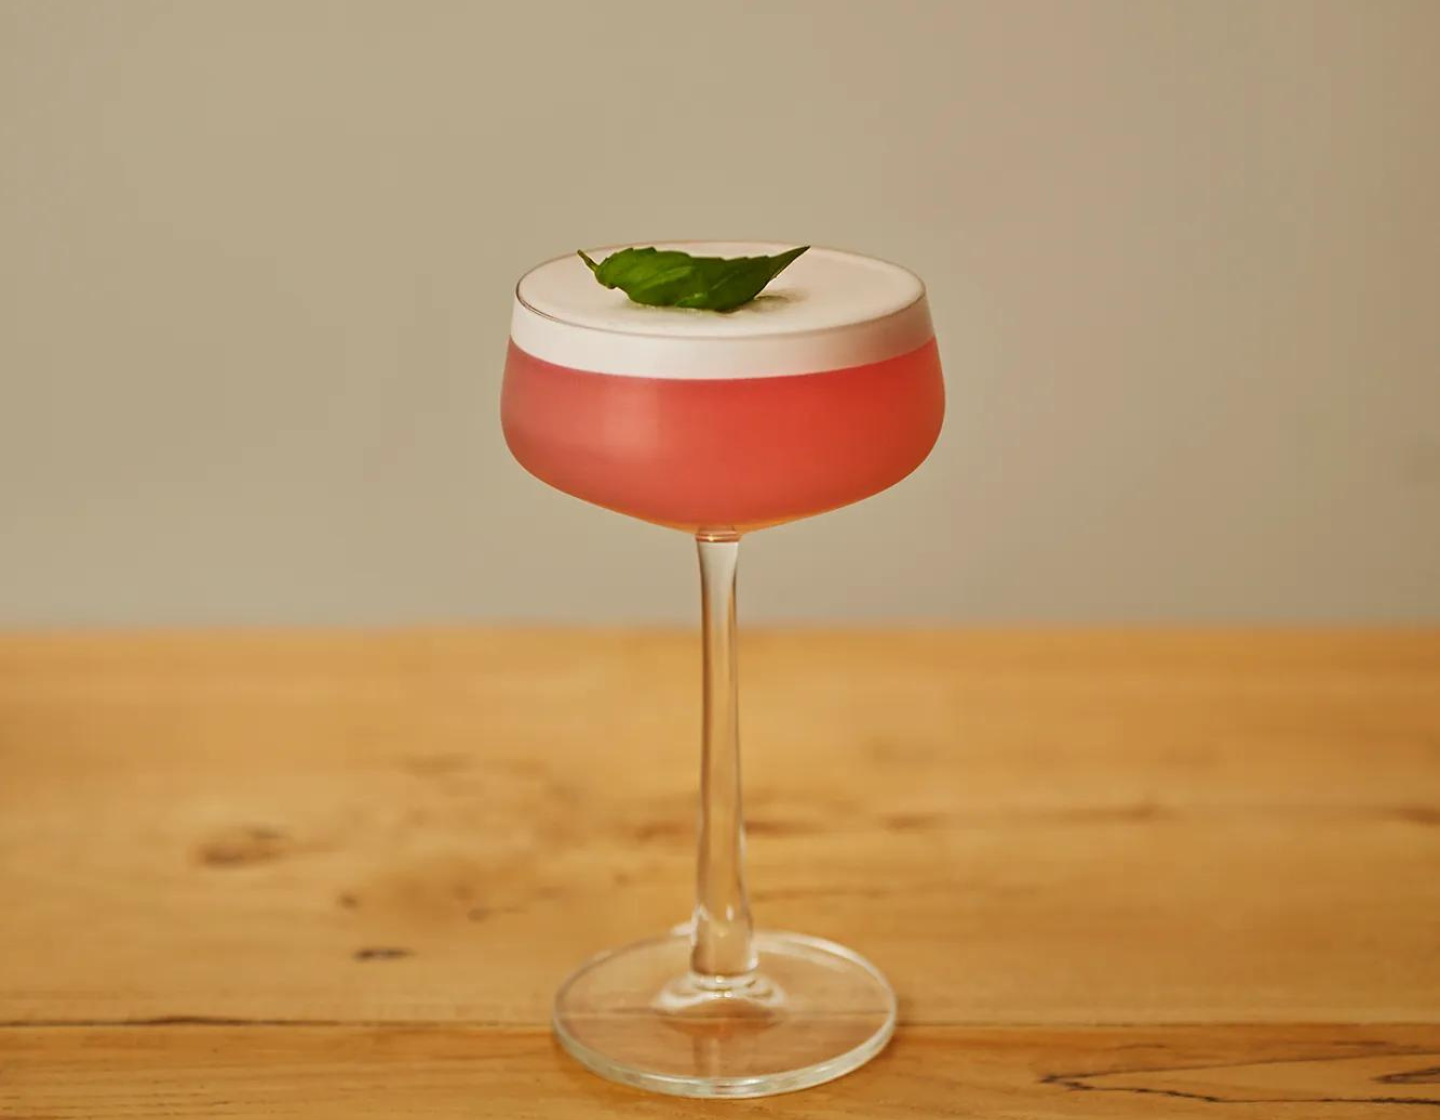 Coctel servido en una copa Martini color rojoplaced in a Martini glass red in colour 